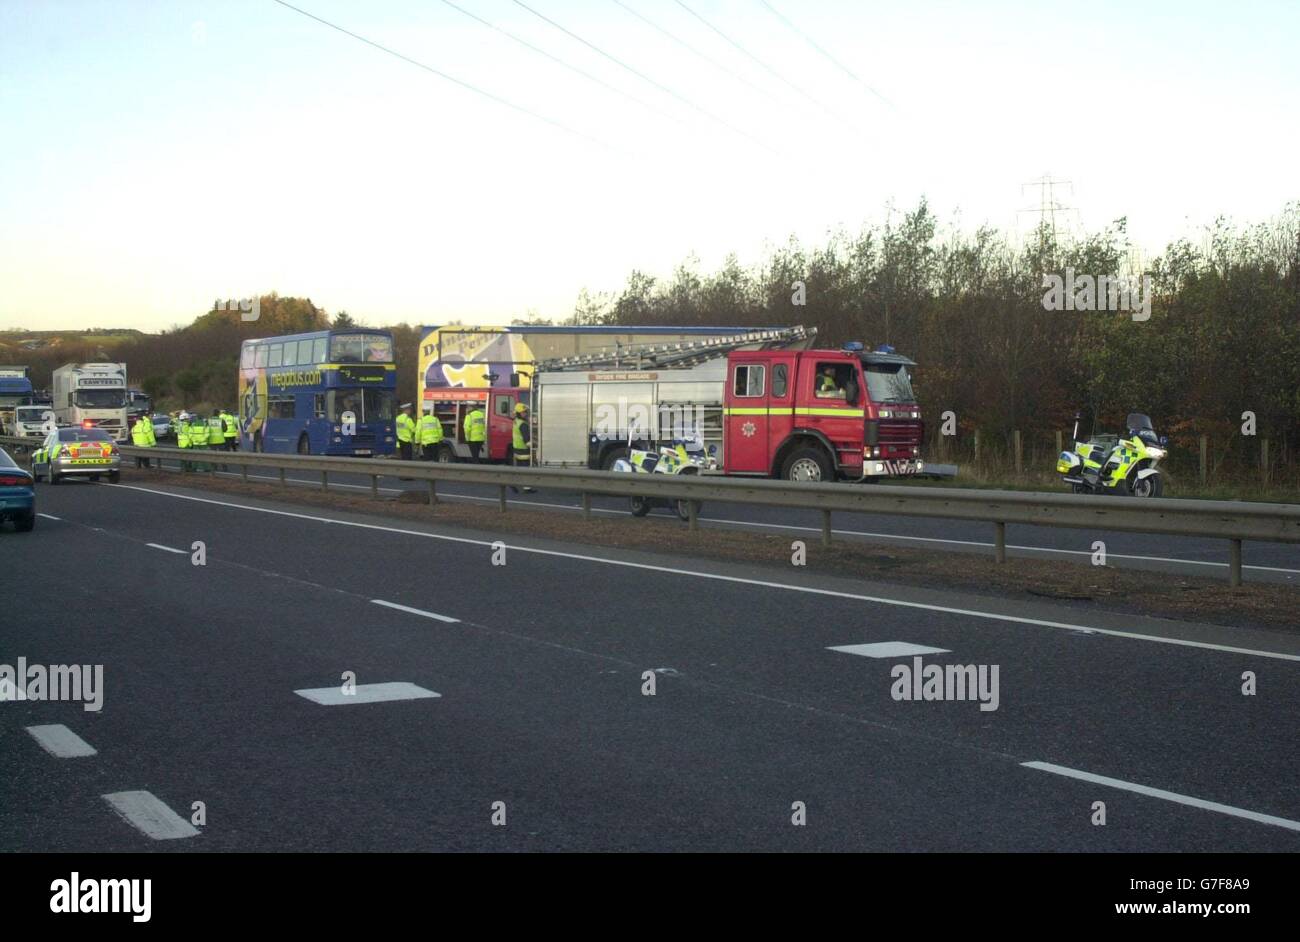 La scena dopo il fatale incidente di autobus sulla strada Forfar a Dundee a Gateside Angus, Scozia. Il conducente di un autobus a due piani è morto dopo che il suo veicolo ha subito un urto con un trattore su una strada statale. Un'altra persona è stata ferita nell'incidente, che è accaduto alle 14:20 circa sulla strada a doppia carreggiata A90 vicino a Forfar, la polizia ha detto. Alcuni dei 35 passeggeri che erano a bordo all'epoca erano intrappolati nel ponte superiore dopo che la scalinata era stata danneggiata, ma sono stati successivamente liberati dai vigili del fuoco. Foto Stock